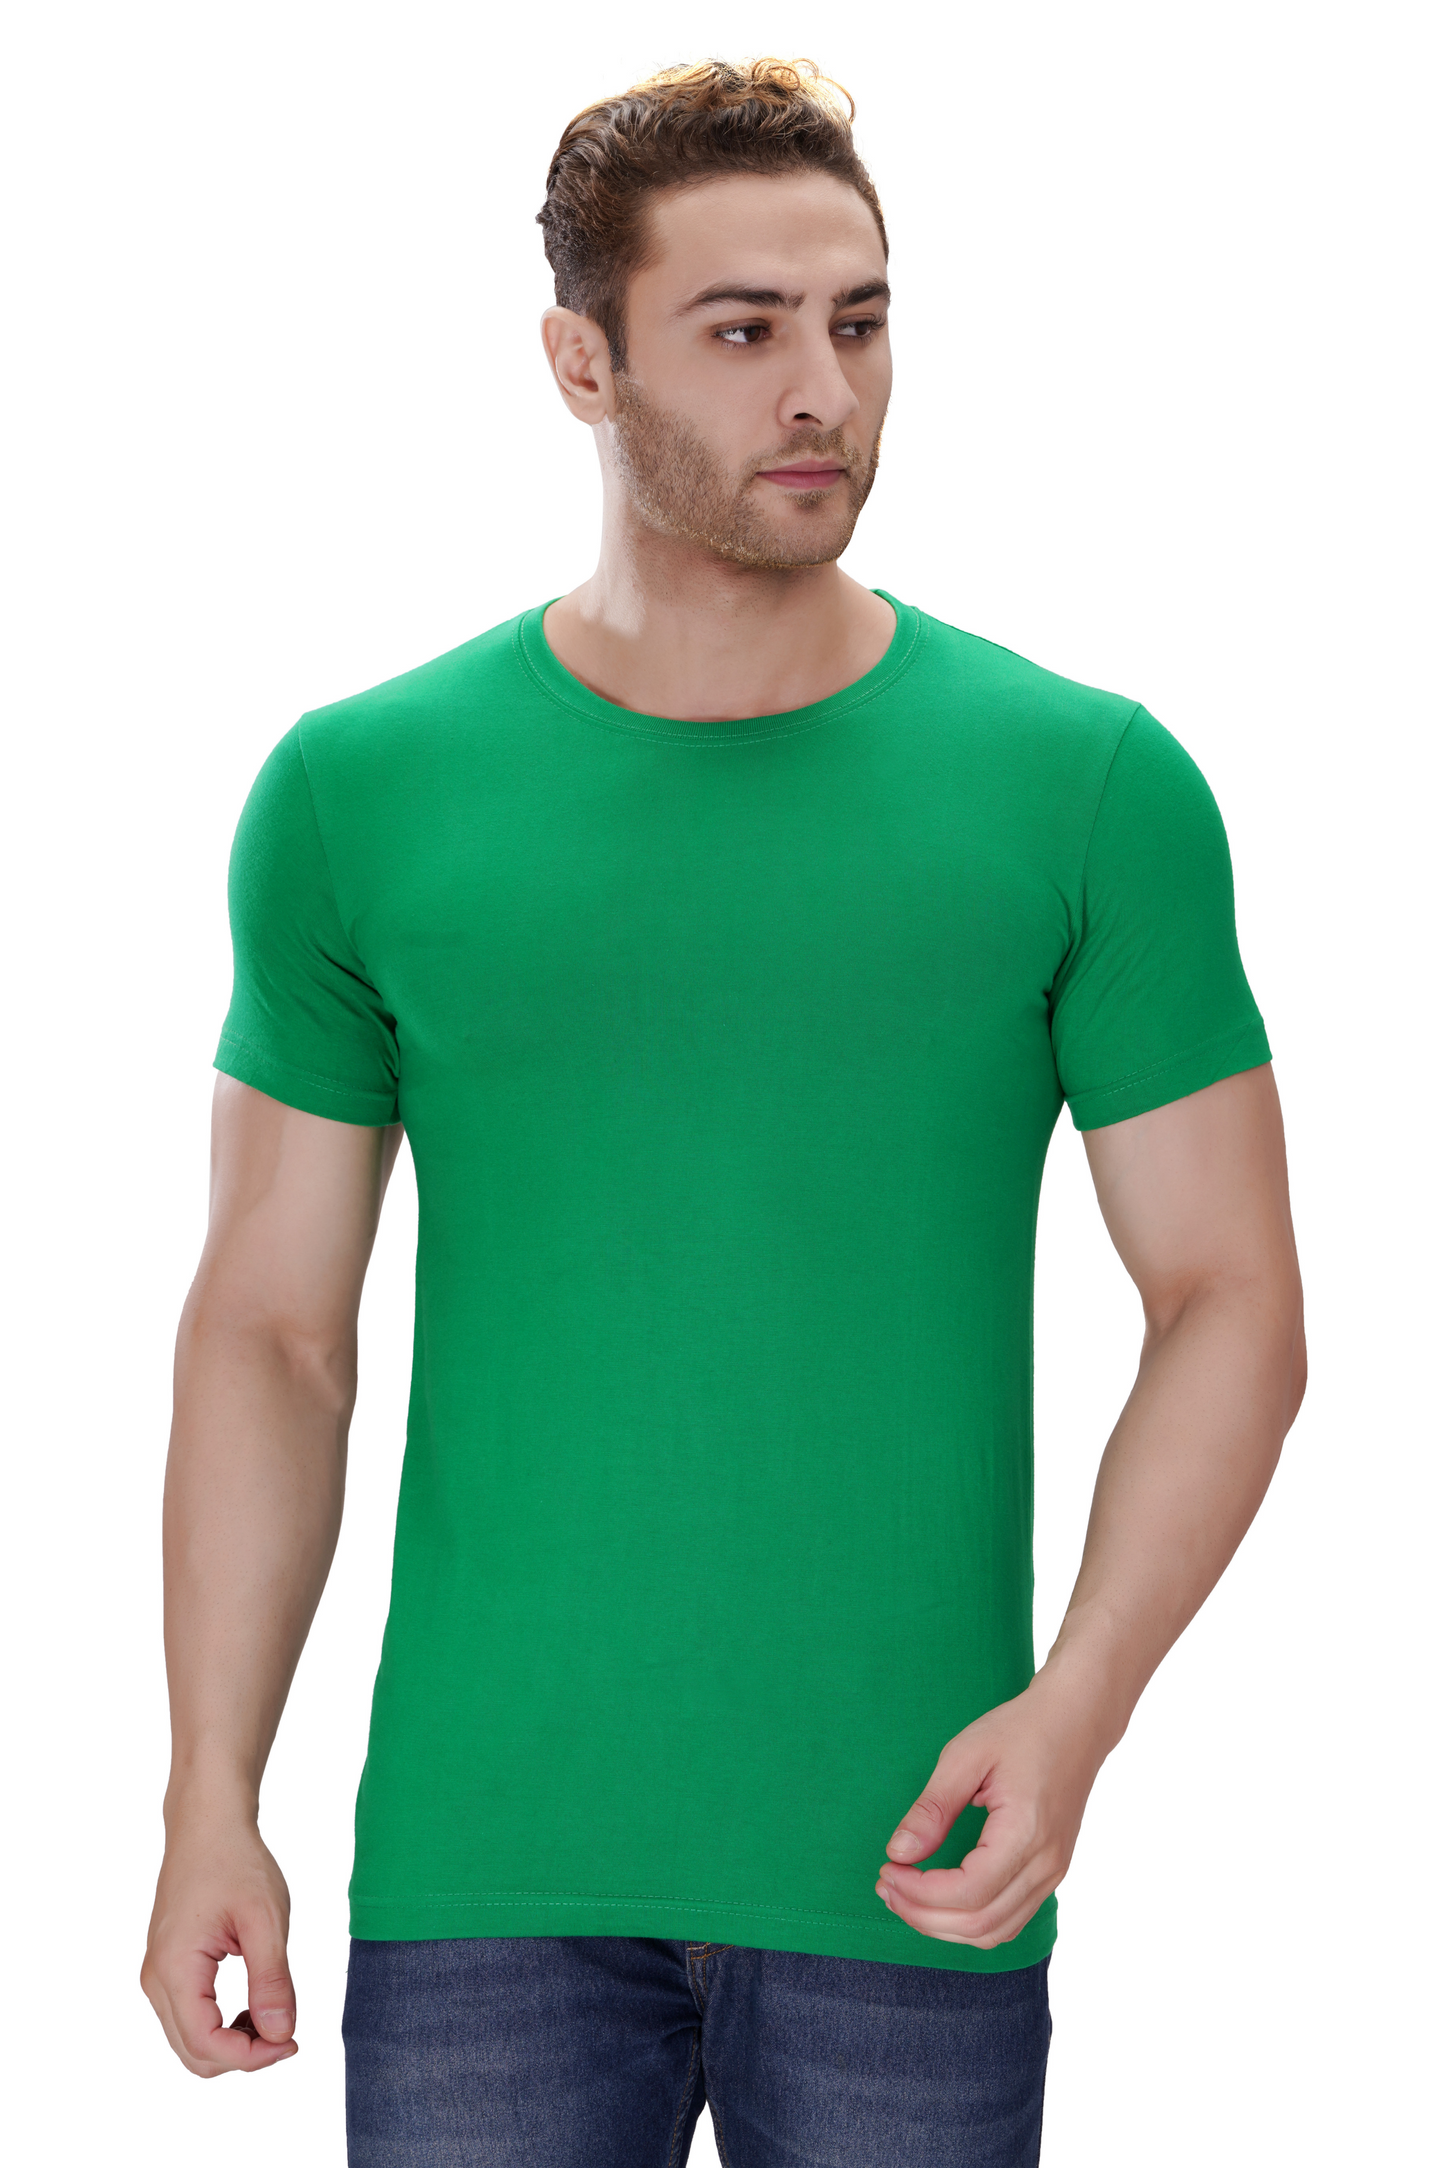 100% Cotton Men’s Half Sleeve T-Shirt - Parrot Green